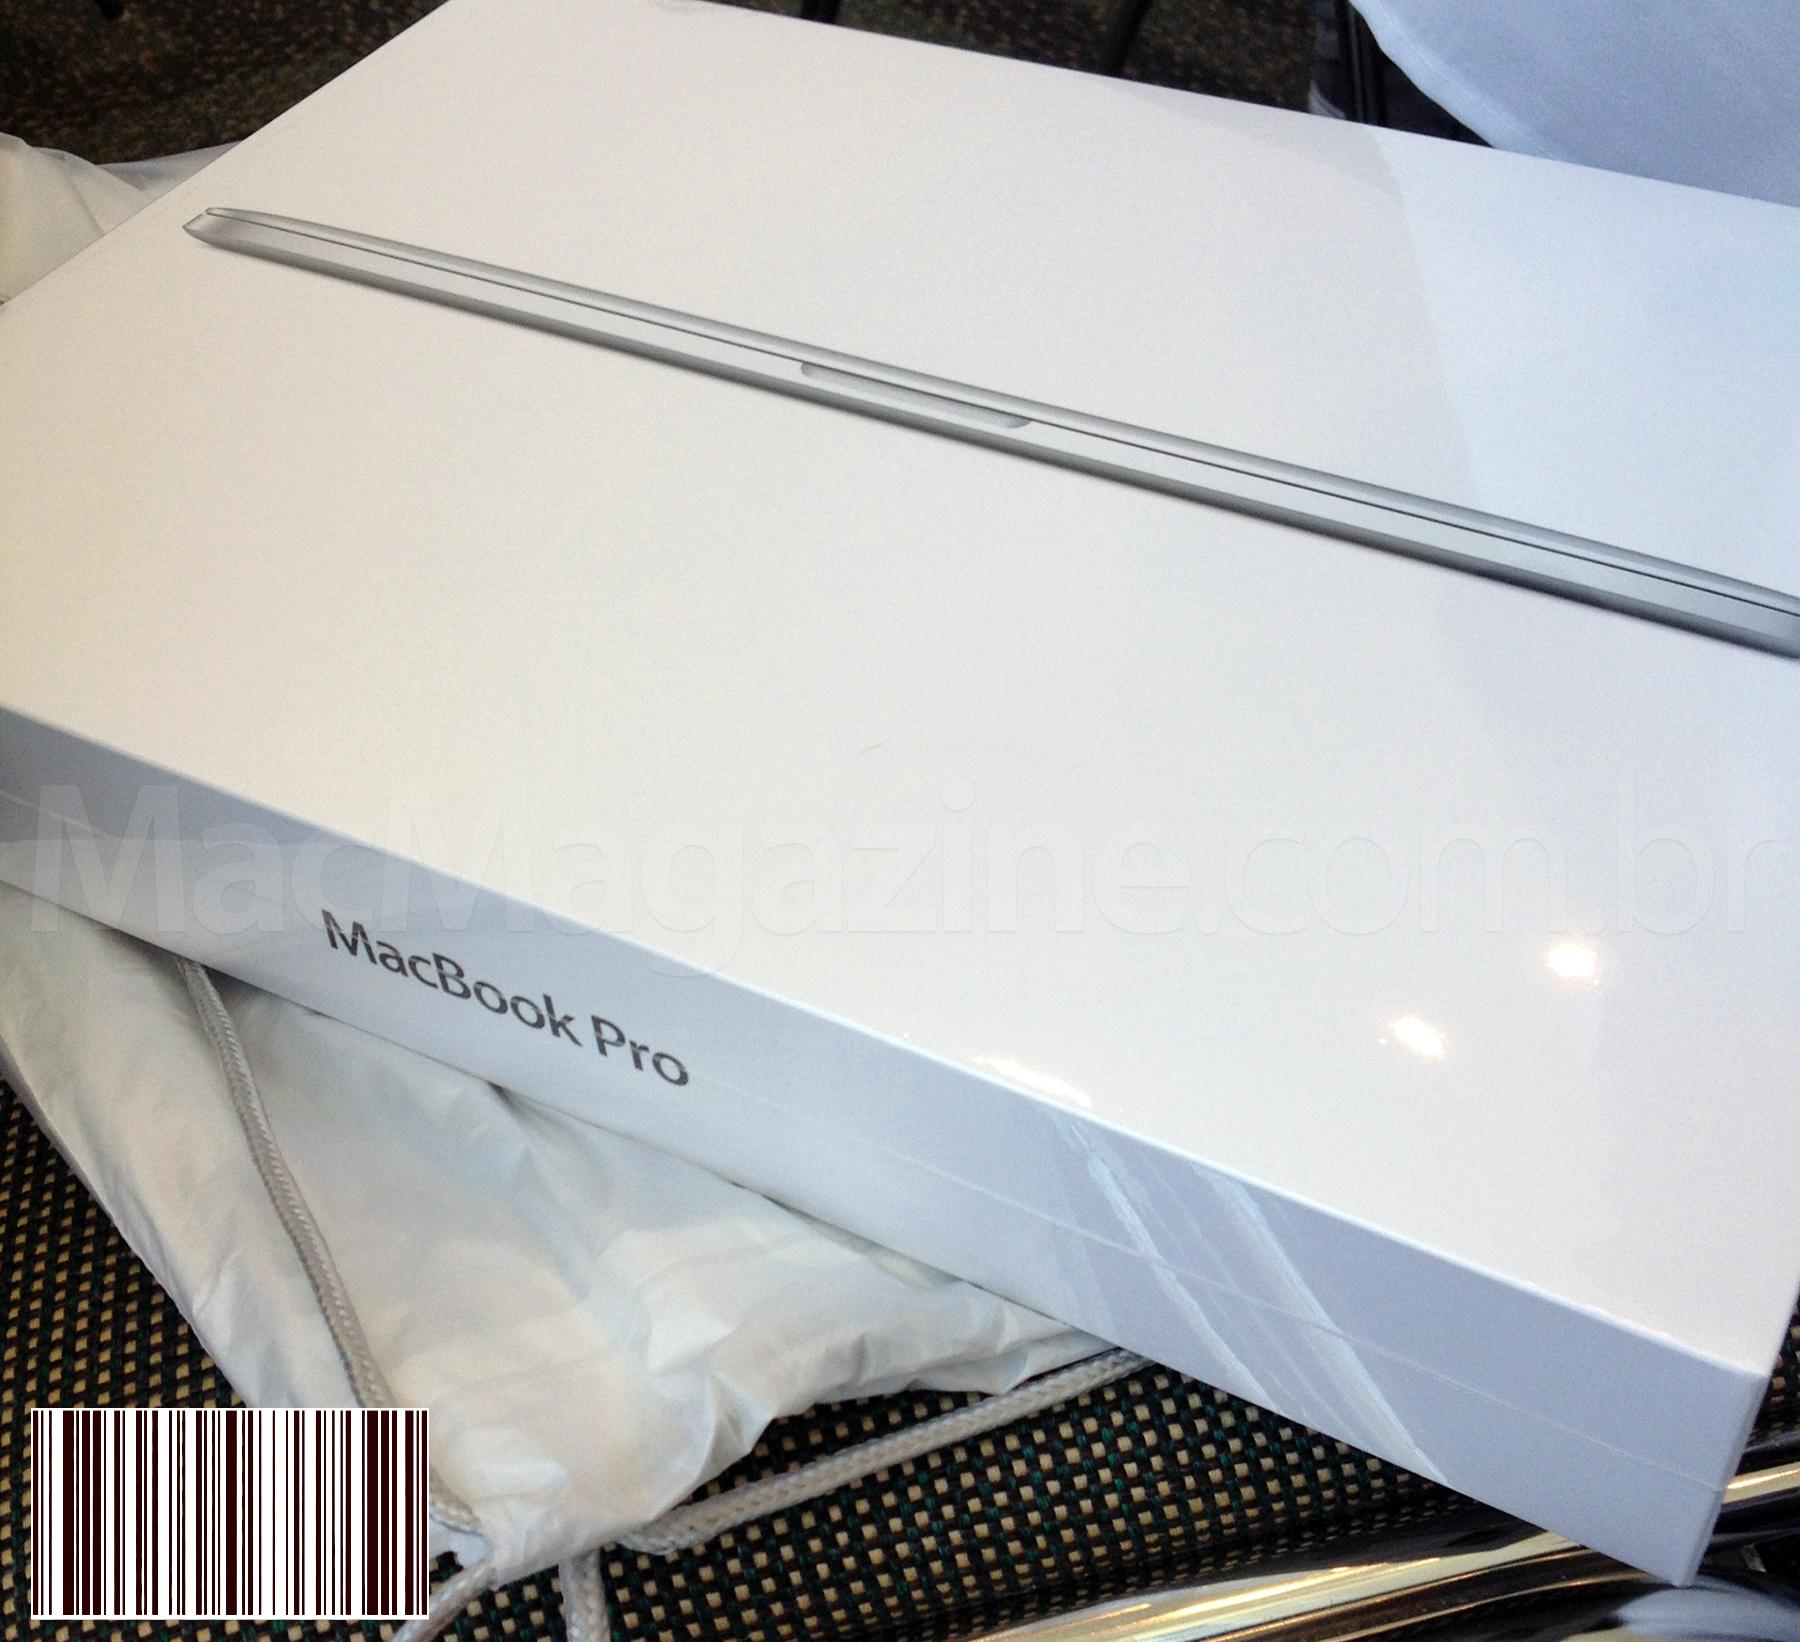 فك التشفير والصور والانطباعات الأولى لجهاز MacBook Pro الجديد المزود بشاشة Retina